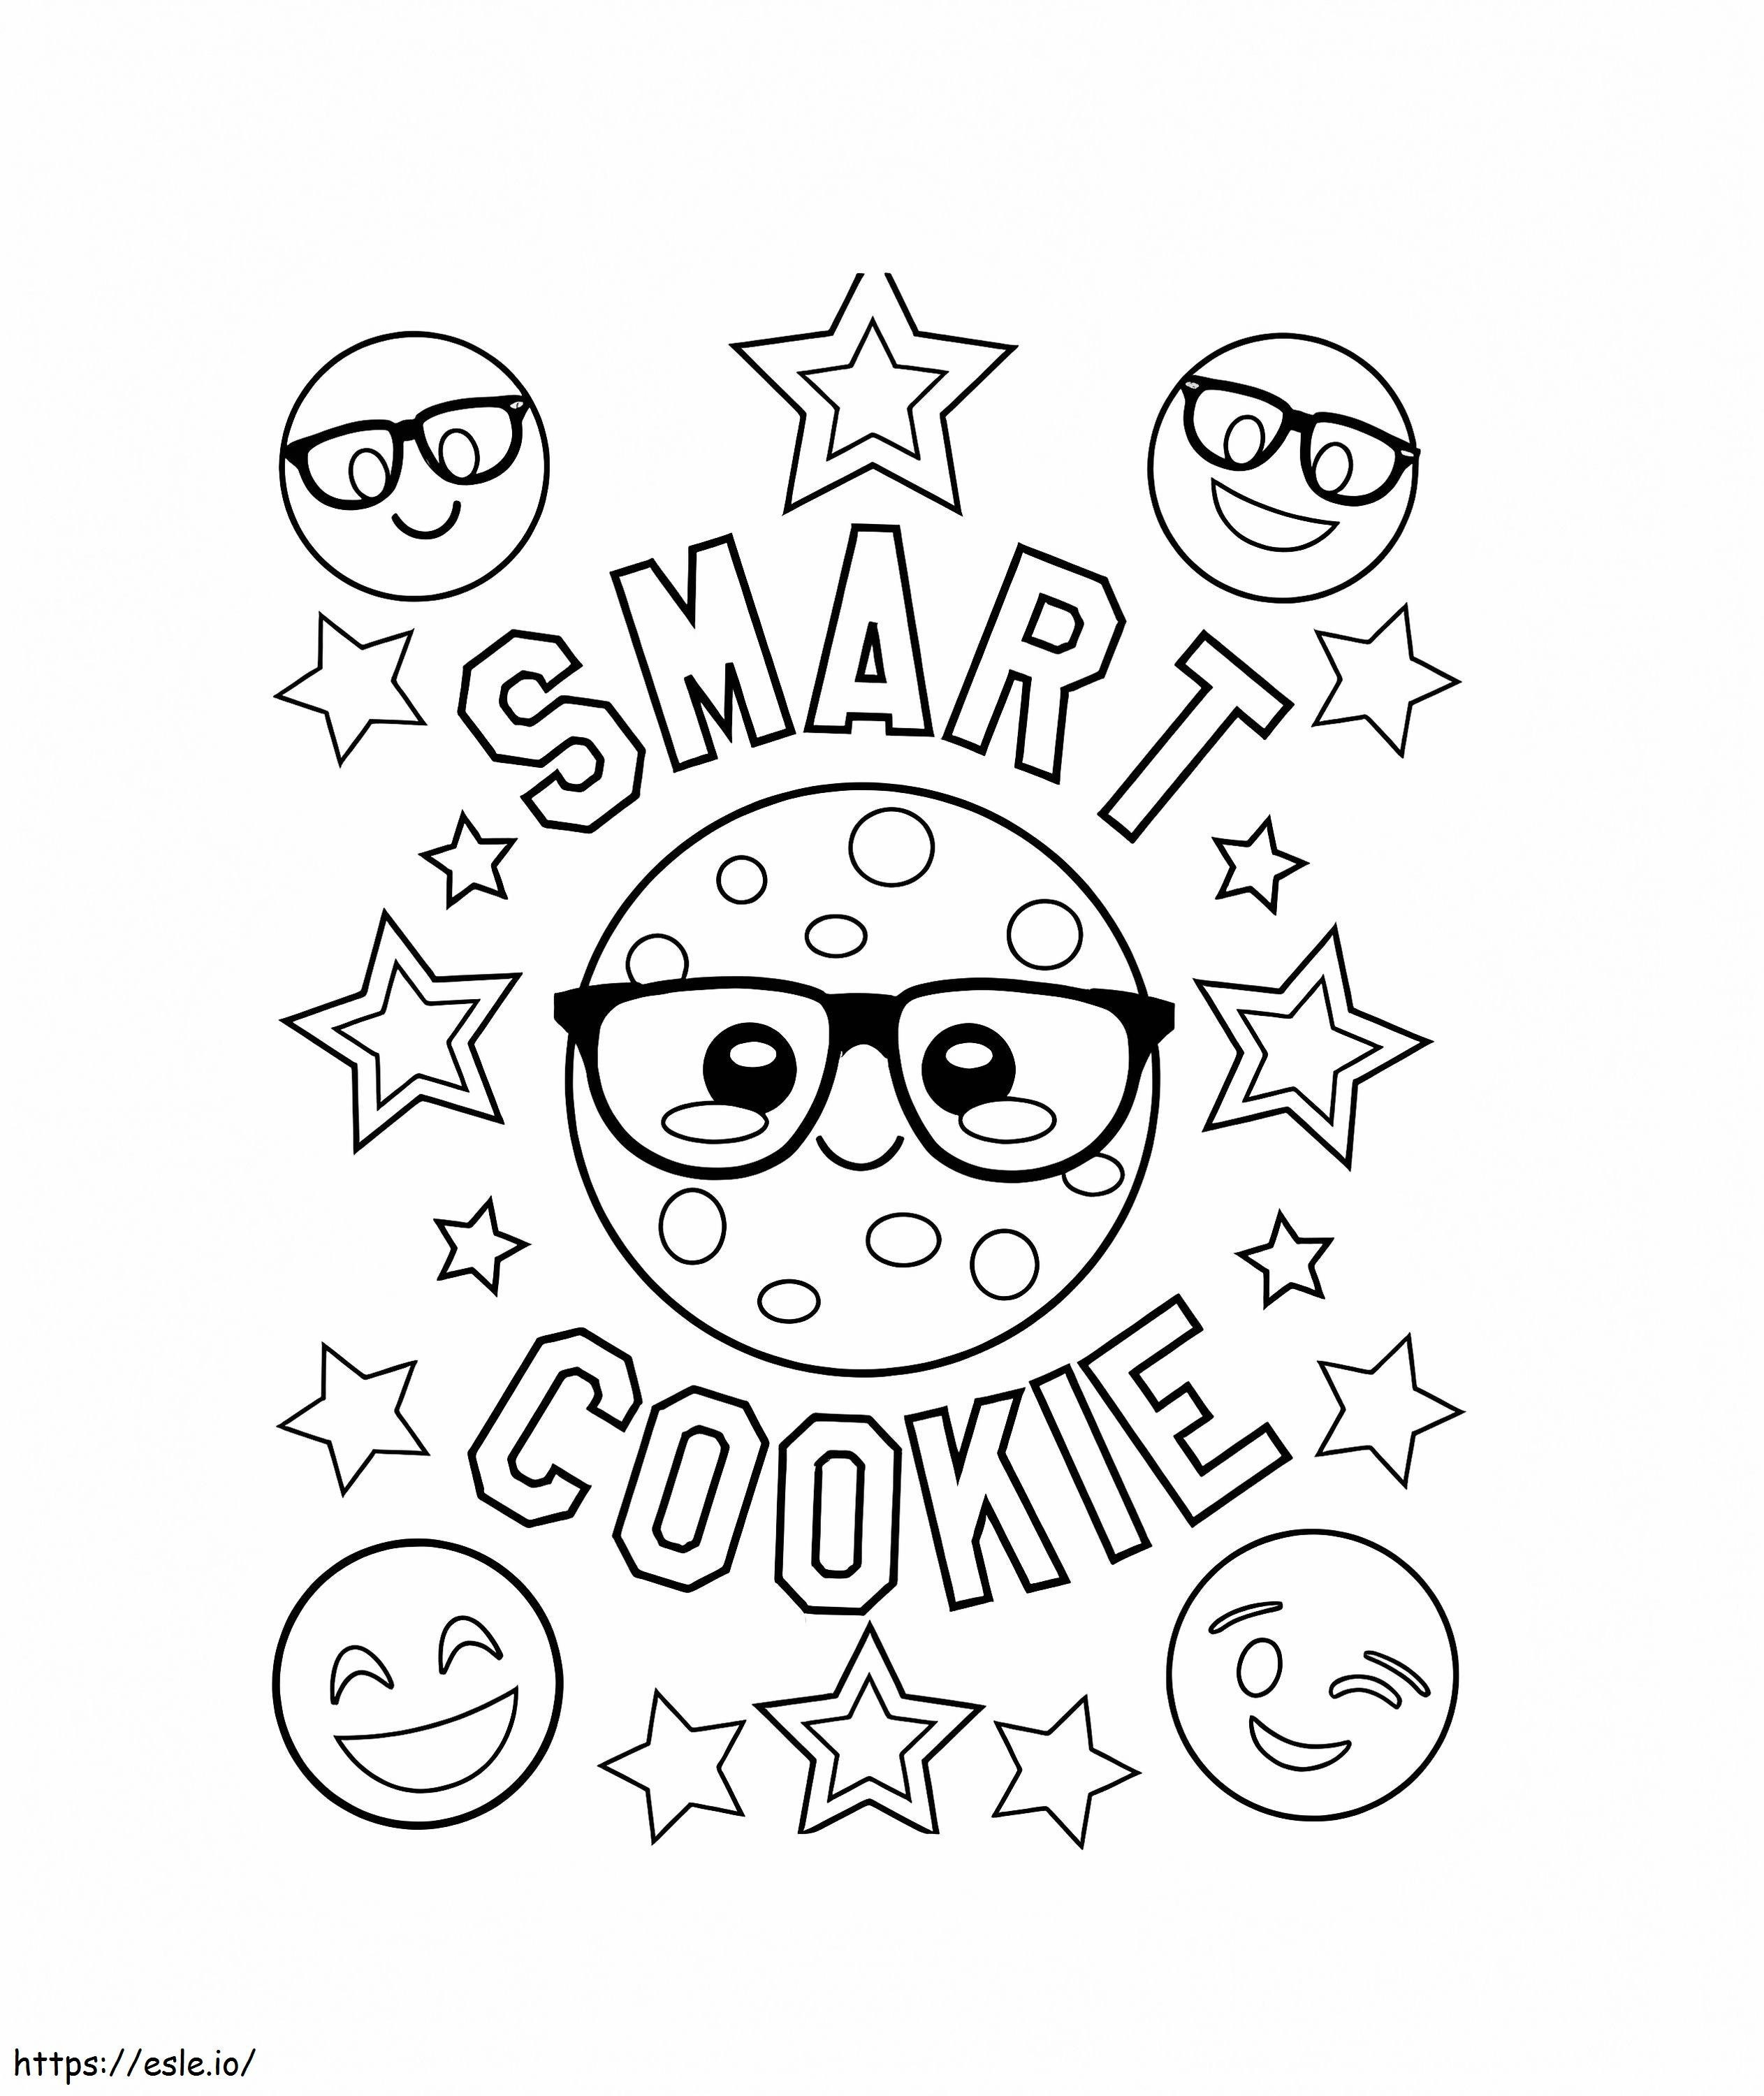 Emoji di biscotti intelligenti da colorare